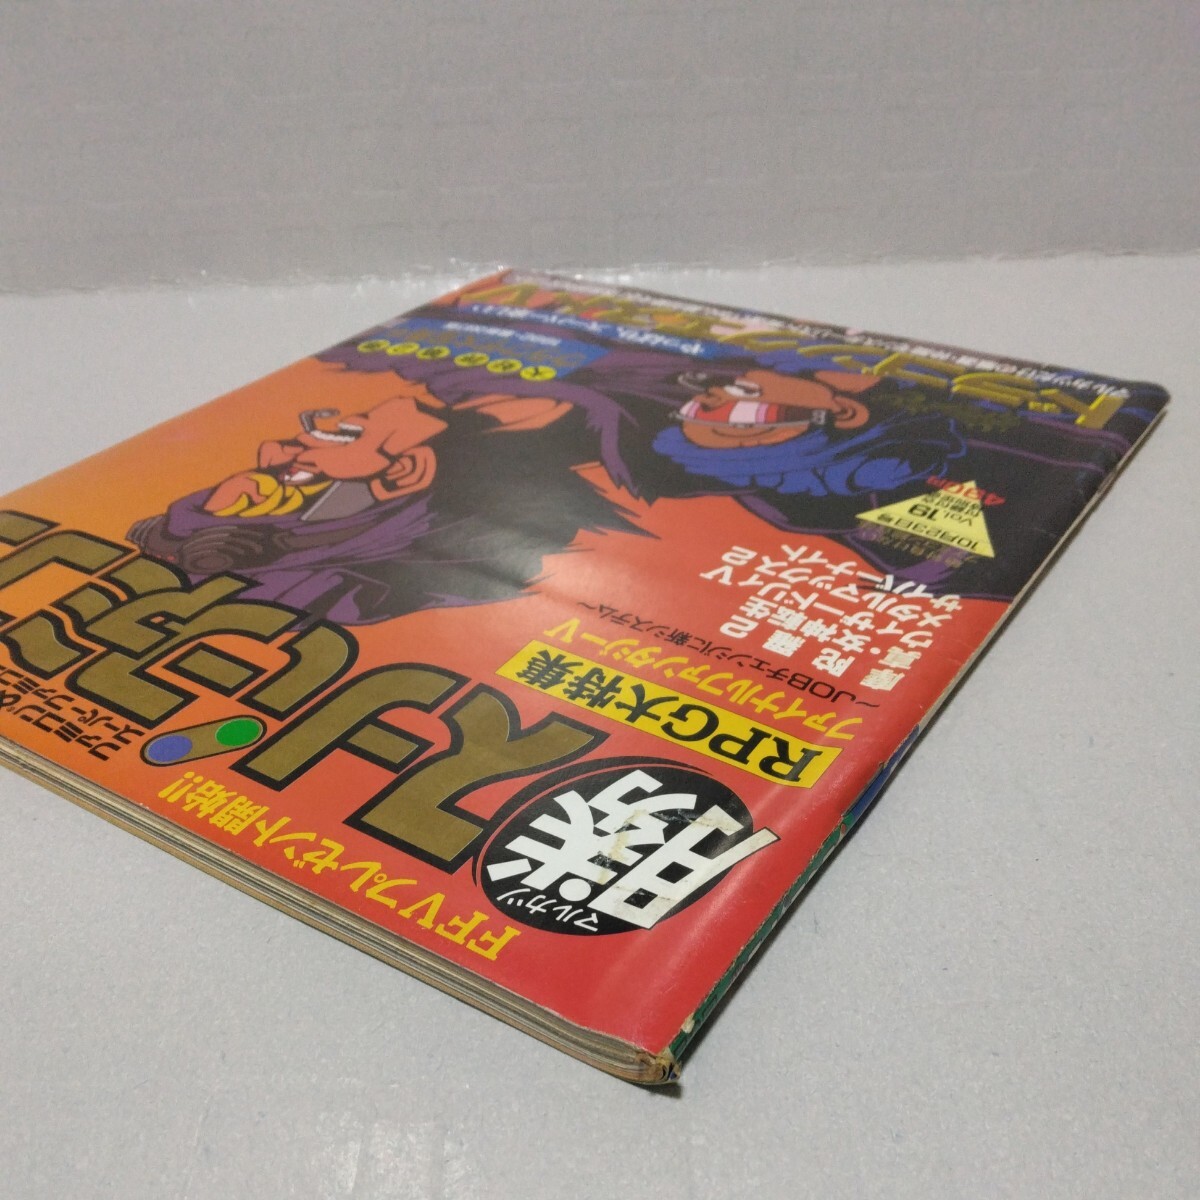 マル勝スーパーファミコン 1992年10月23日号 Vol.19 付録無し_画像3